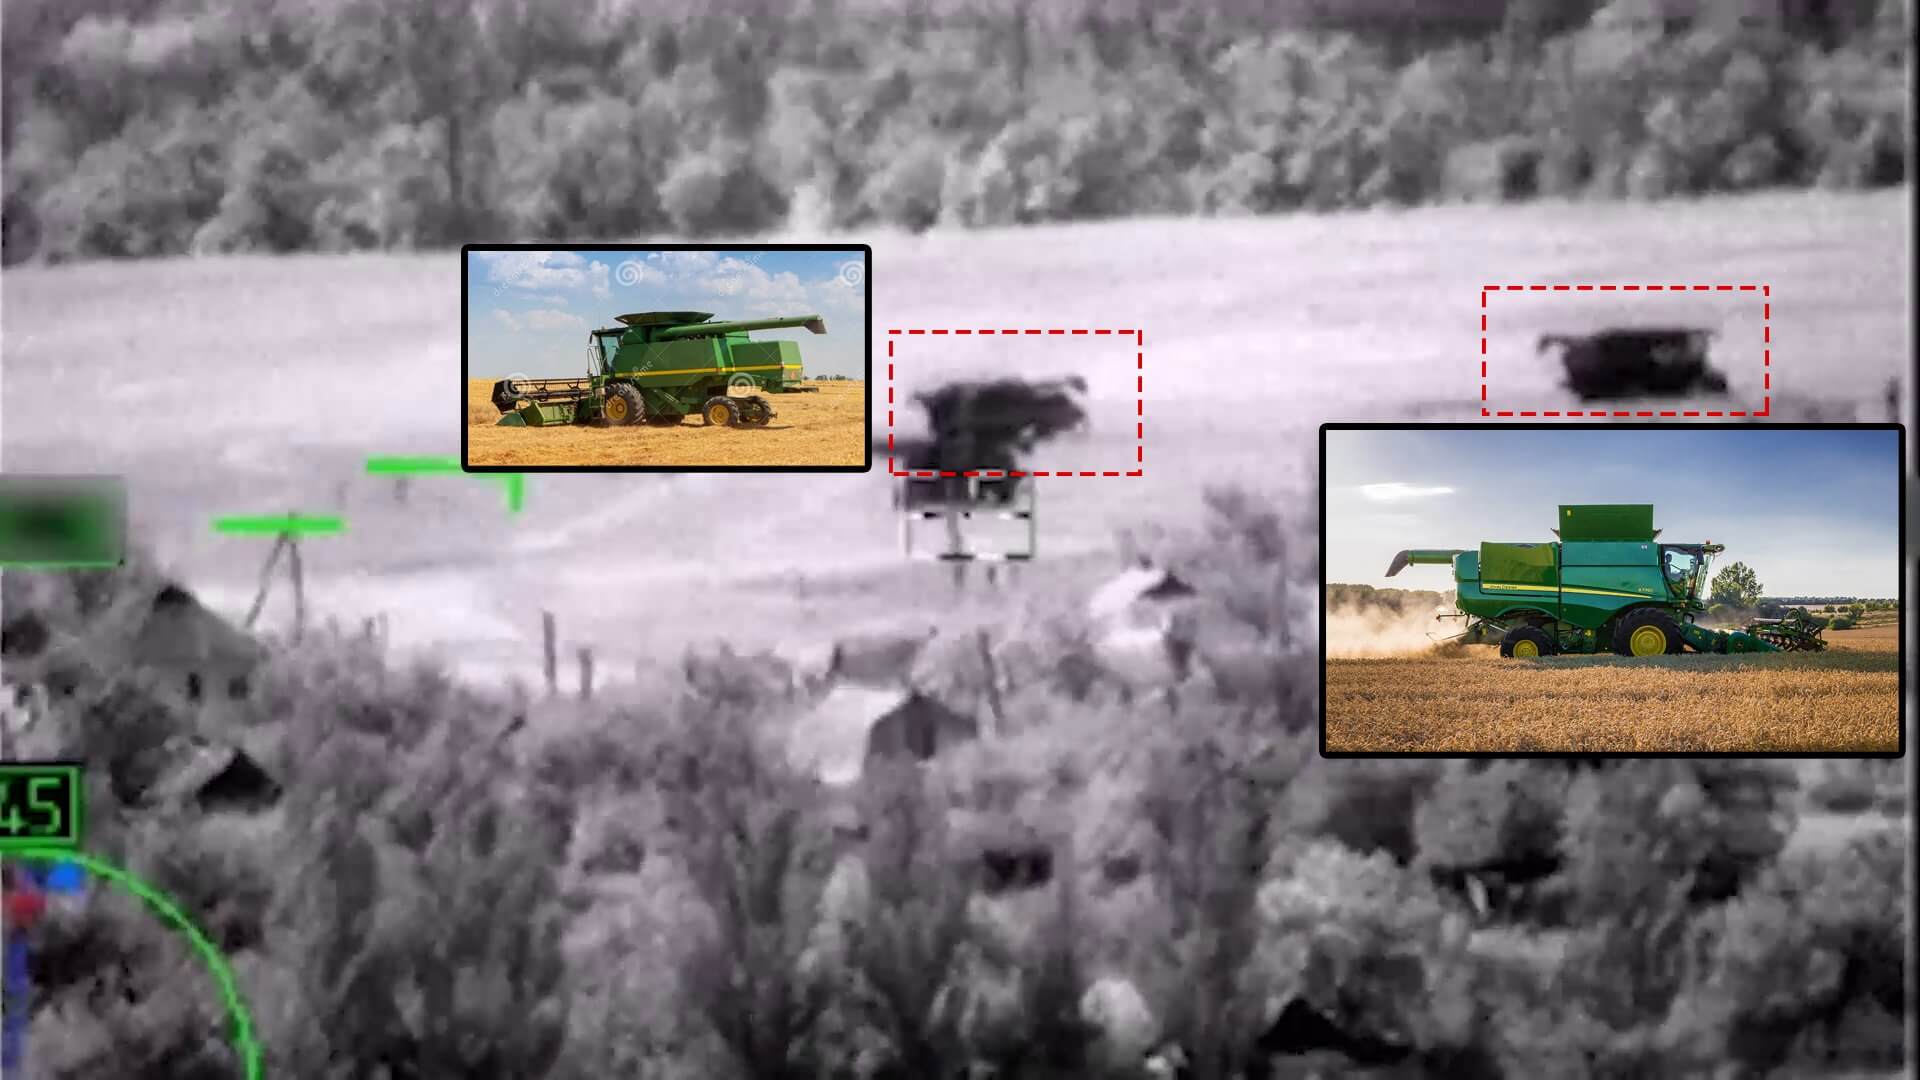 OSINT-Recherchen in Sozialen Netzwerken zeigen, dass im Videomaterial keine Panzer zu sehen sind, sondern landwirtschaftliche Maschinen